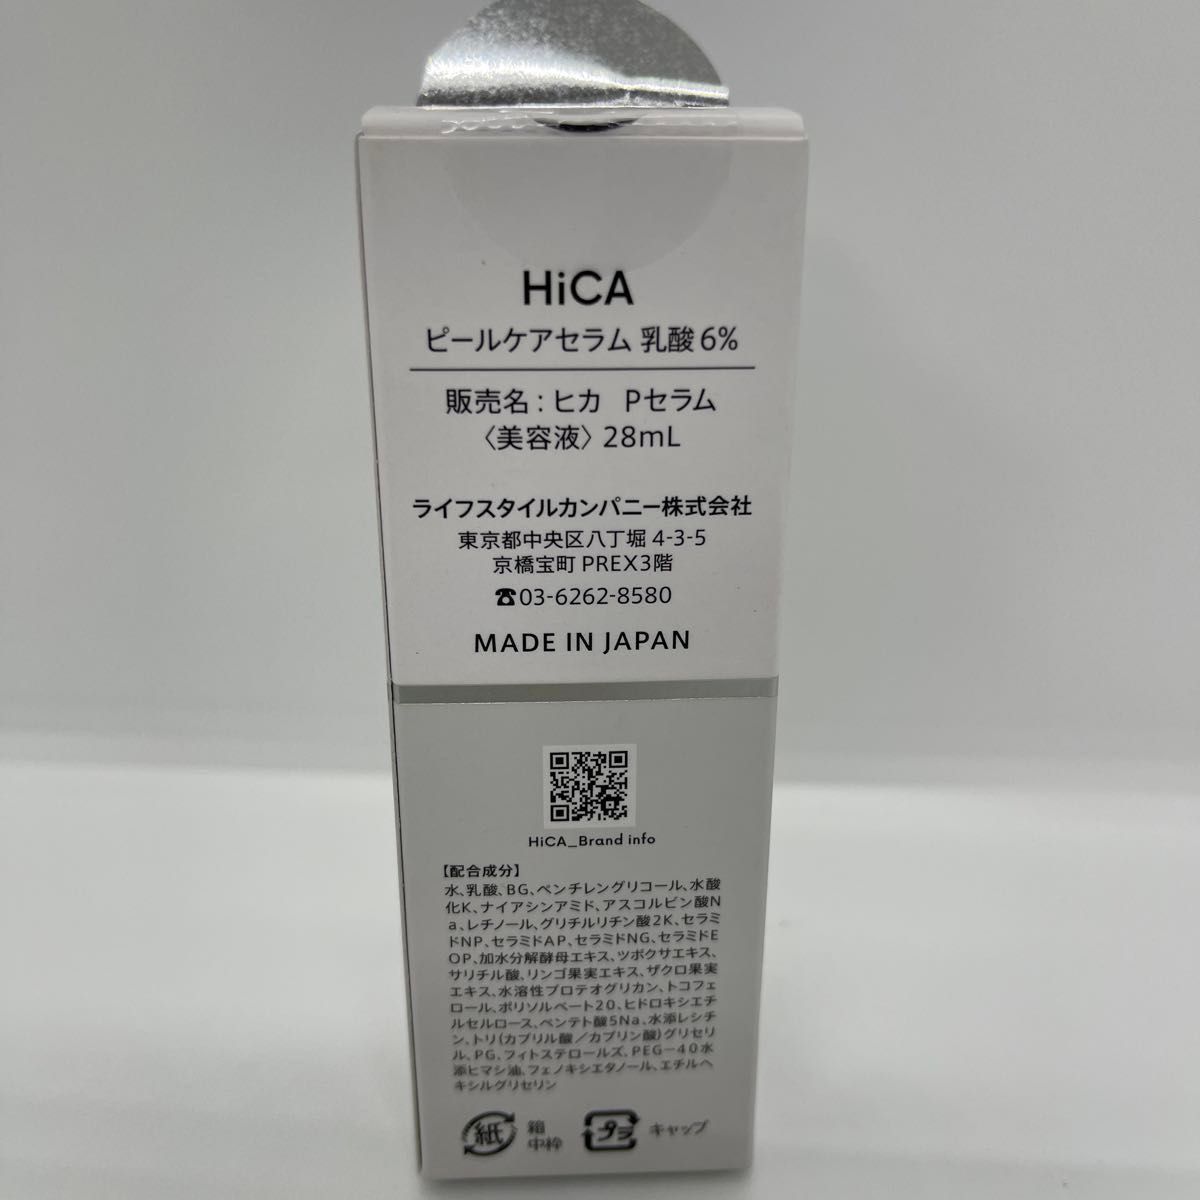 5点セット　ヒカ HiCA ピールケアセラム 乳酸6% 28ml 角質ケア 美容液 無添加 日本製 保湿型AHA 乳酸 敏感肌